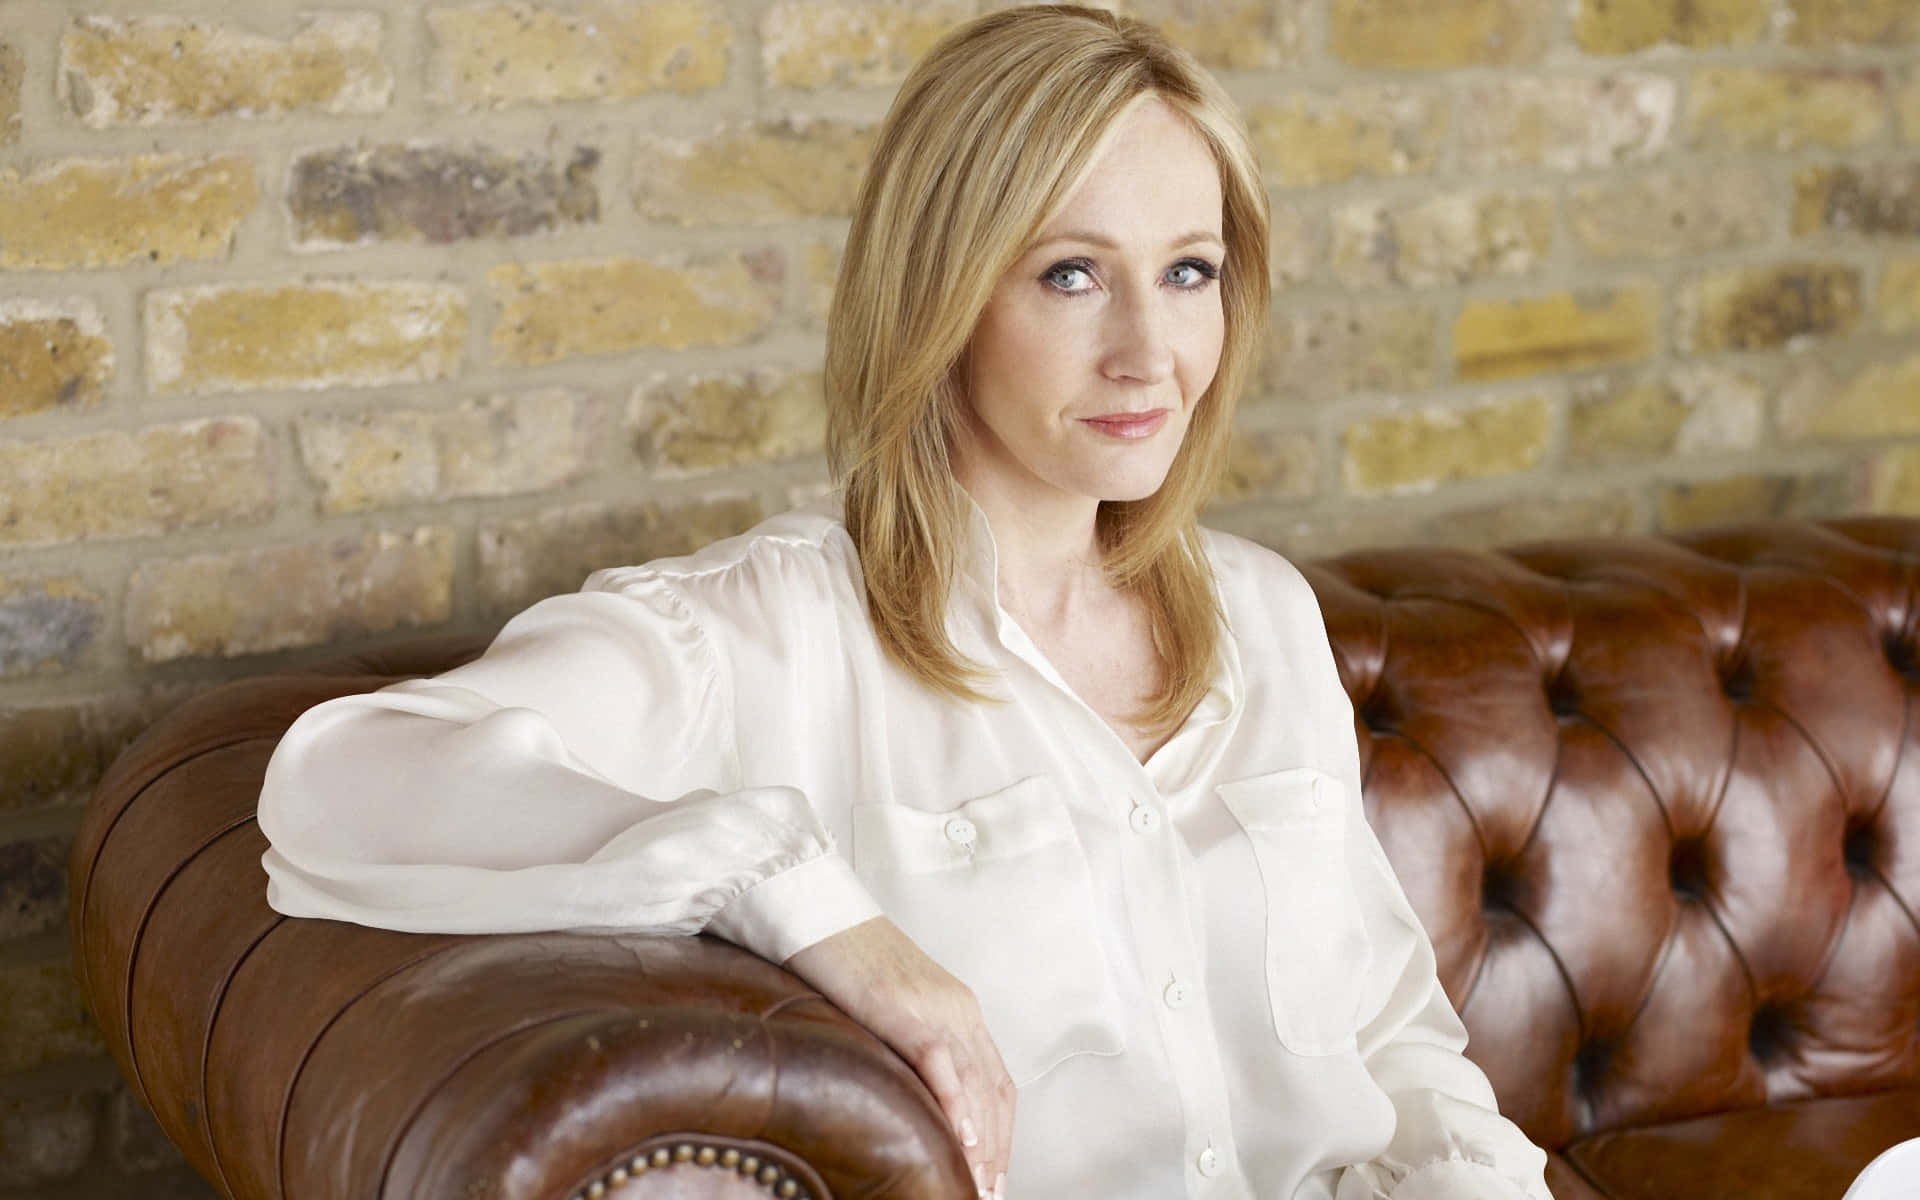 Jk. Rowling Sonriendo En Un Evento. Fondo de pantalla